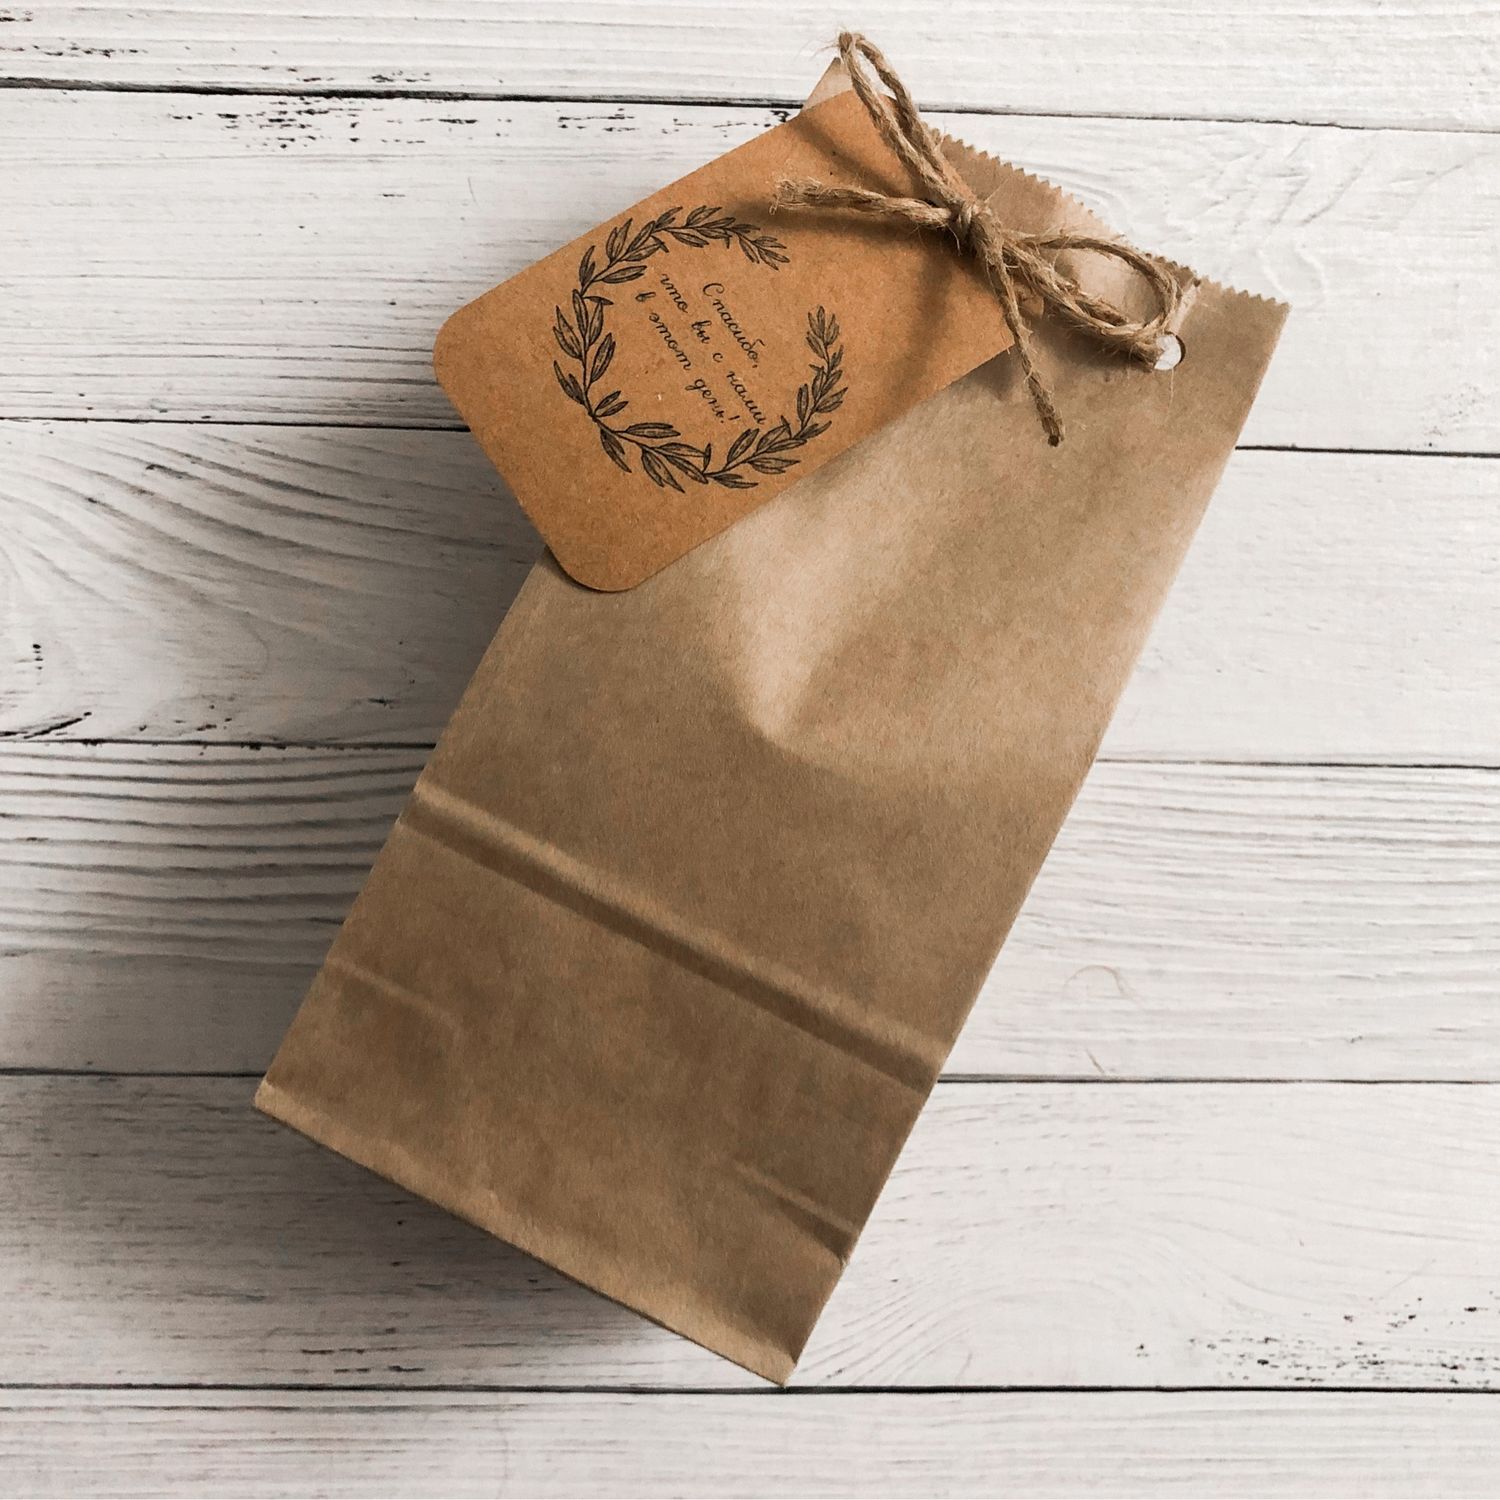 Пакеты для фасовки чая (бумажные, зип пакеты): купить оптом и в розницу